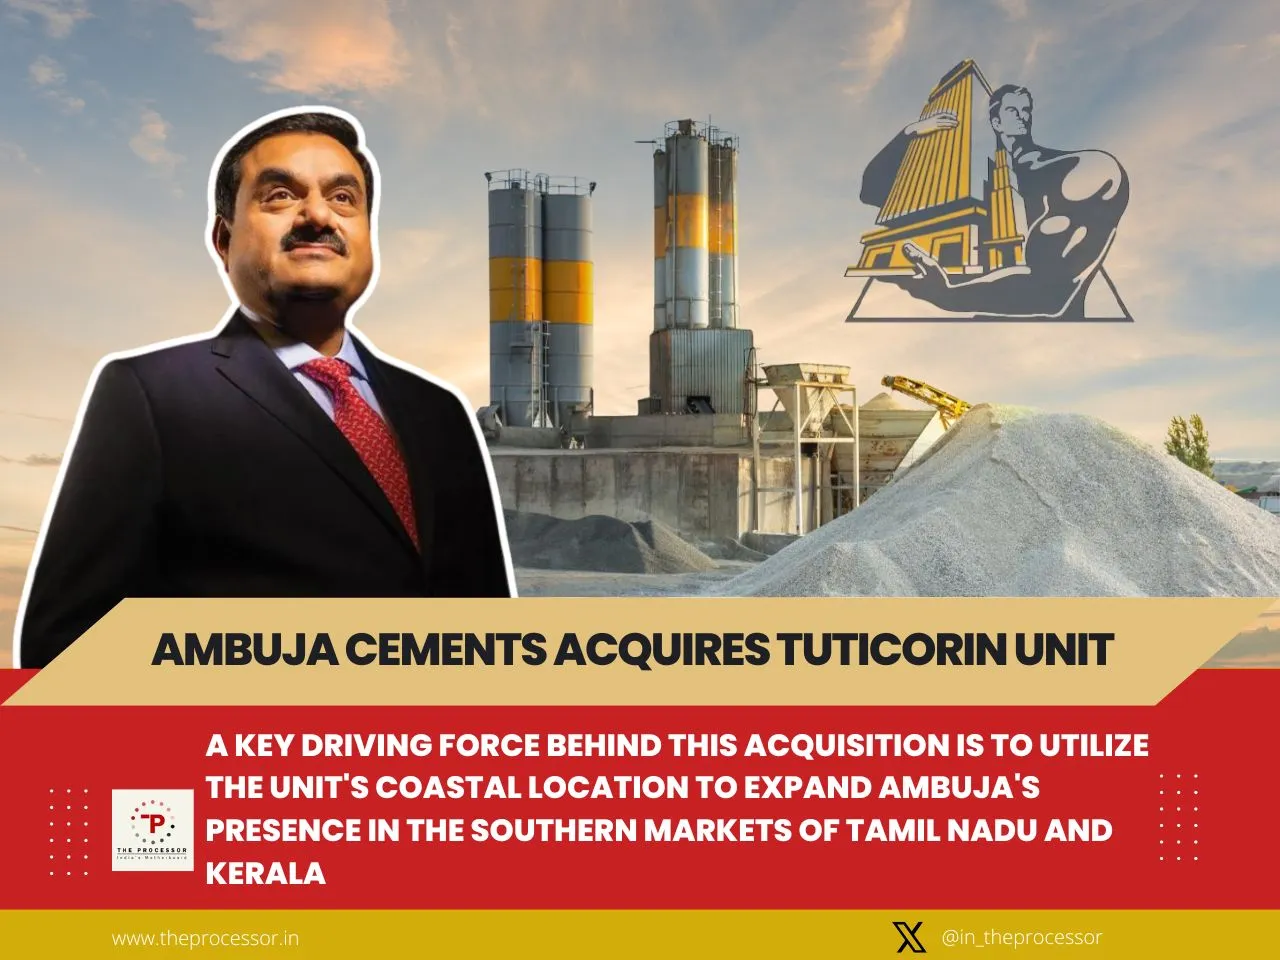 Tuticorin Deal Bolsters Adani Group's Cement Portfolio